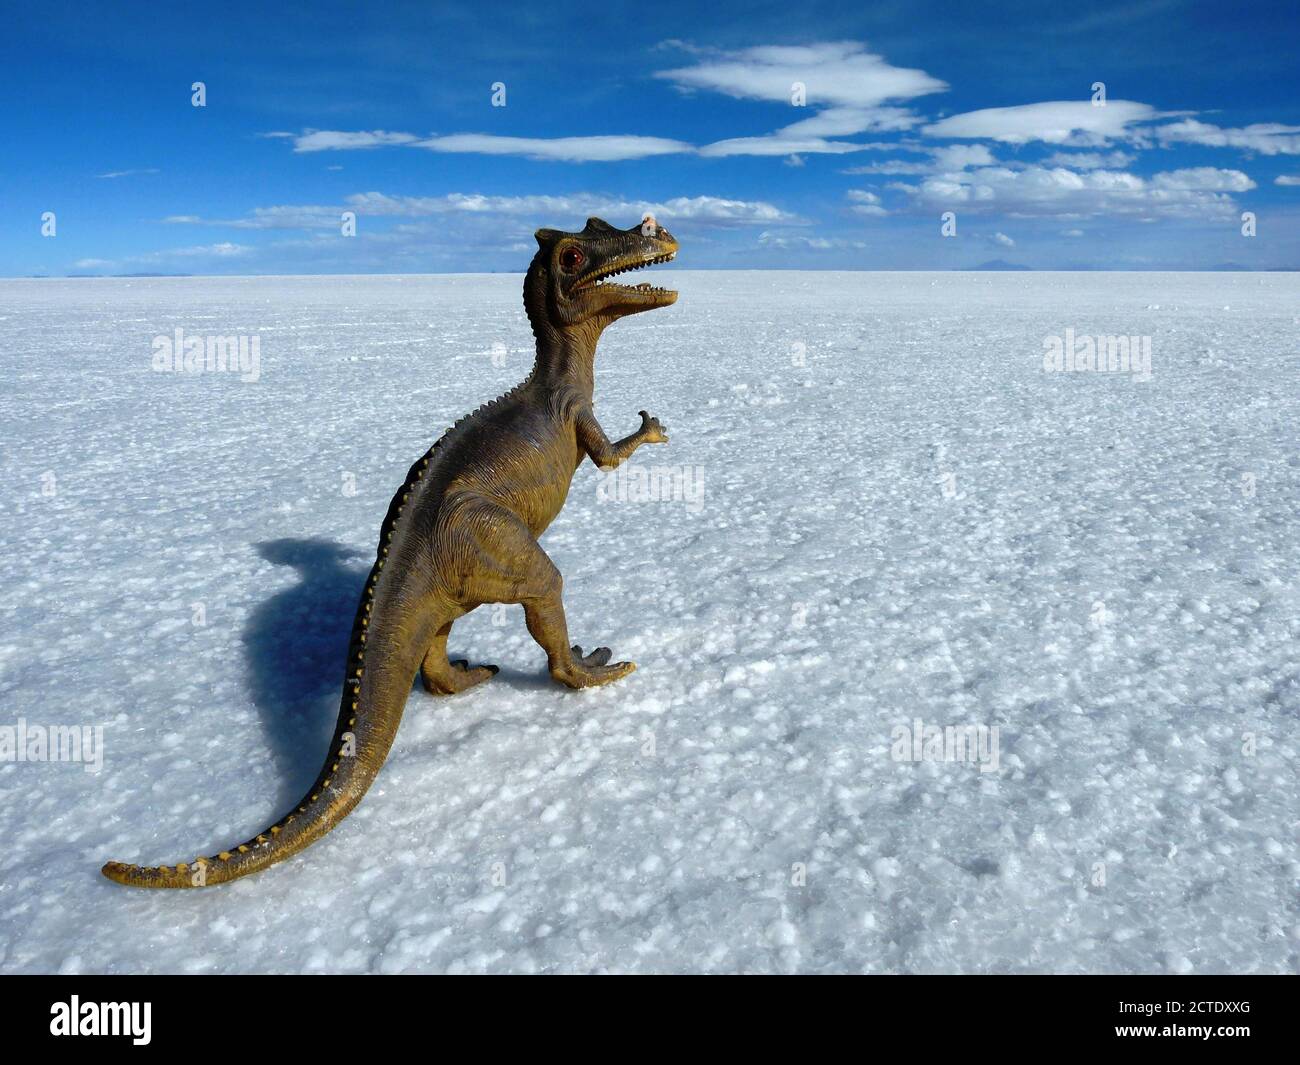 Spielzeug Dinosaurier in der weißen Wüste. Tyrannosaurus in Salinen von Uyuni, Bolivien, Altiplano. Perspektivischer Hintergrund. Salar de Uyuni. Blauer Himmel. Horizont Stockfoto